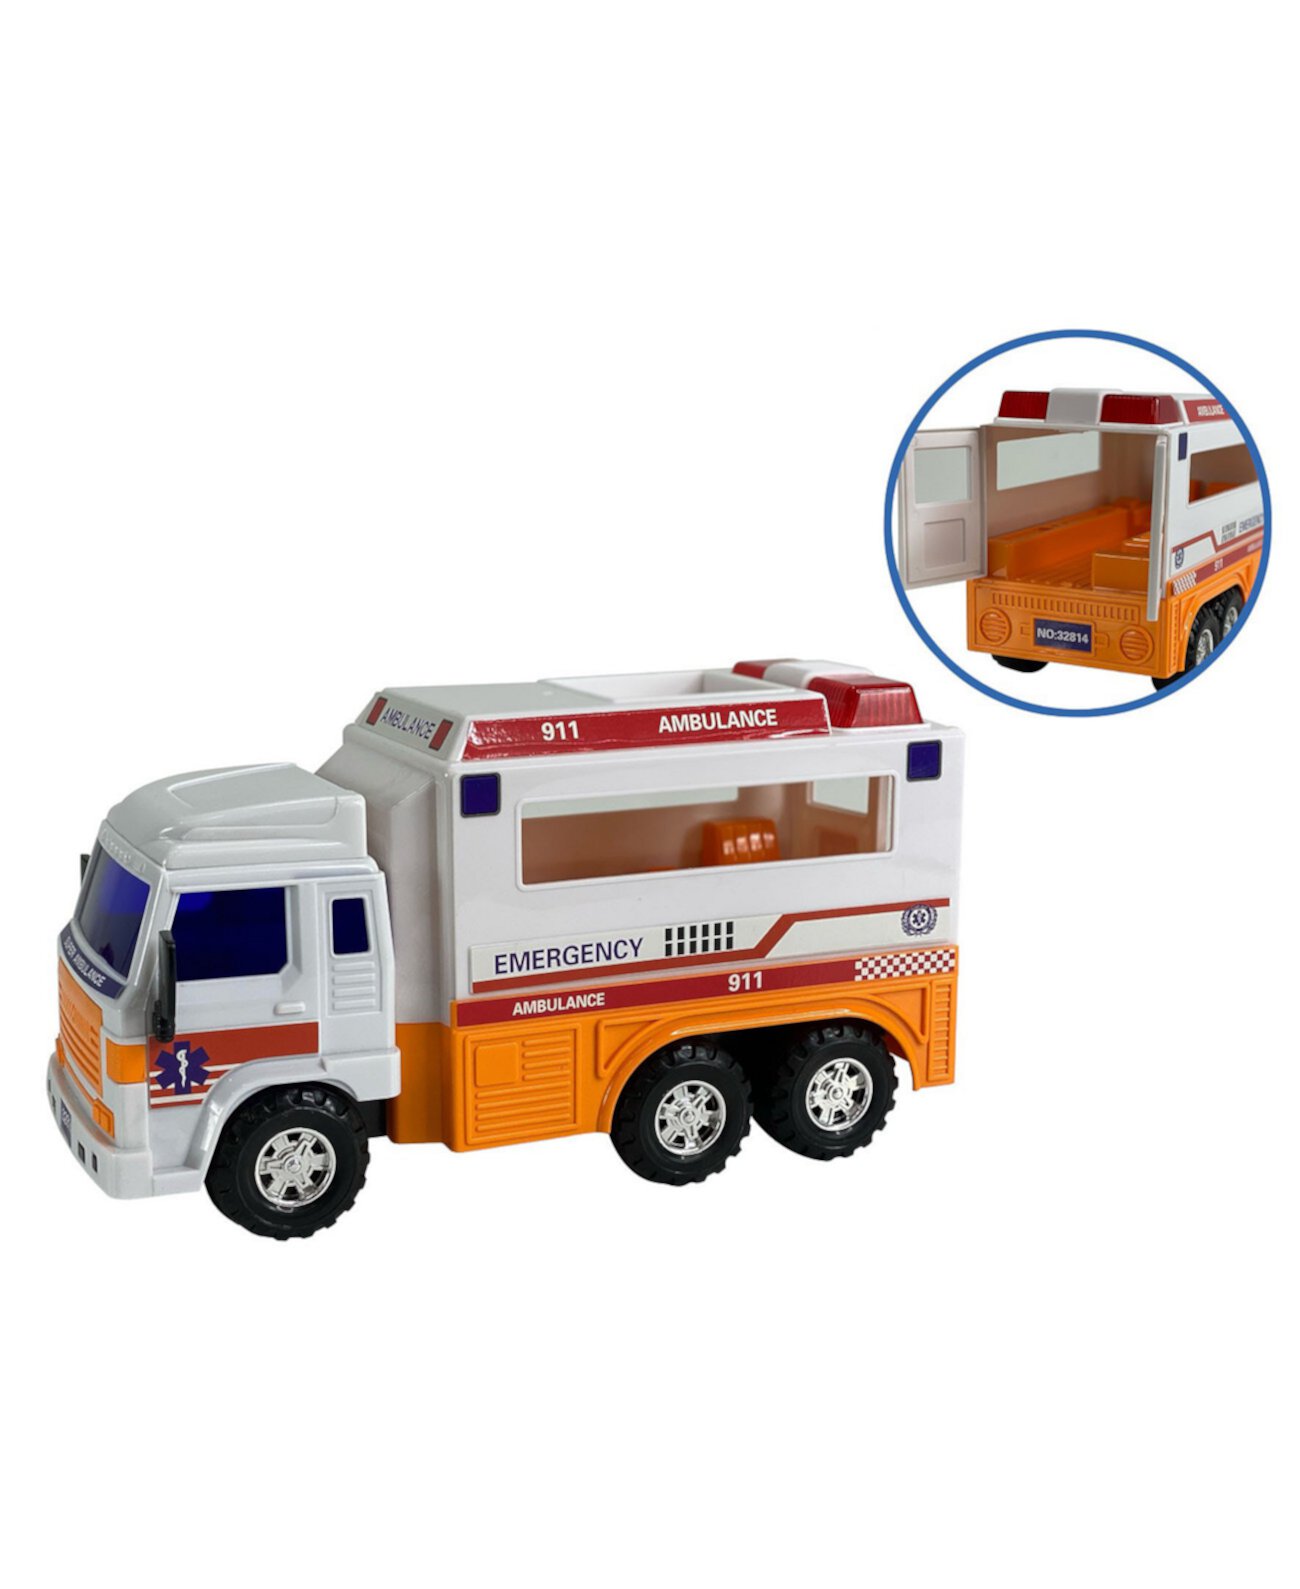 Техники скорой медицинской помощи среднего режима, фельдшер, спасают машину скорой помощи, играют в игрушечный грузовик Big Daddy